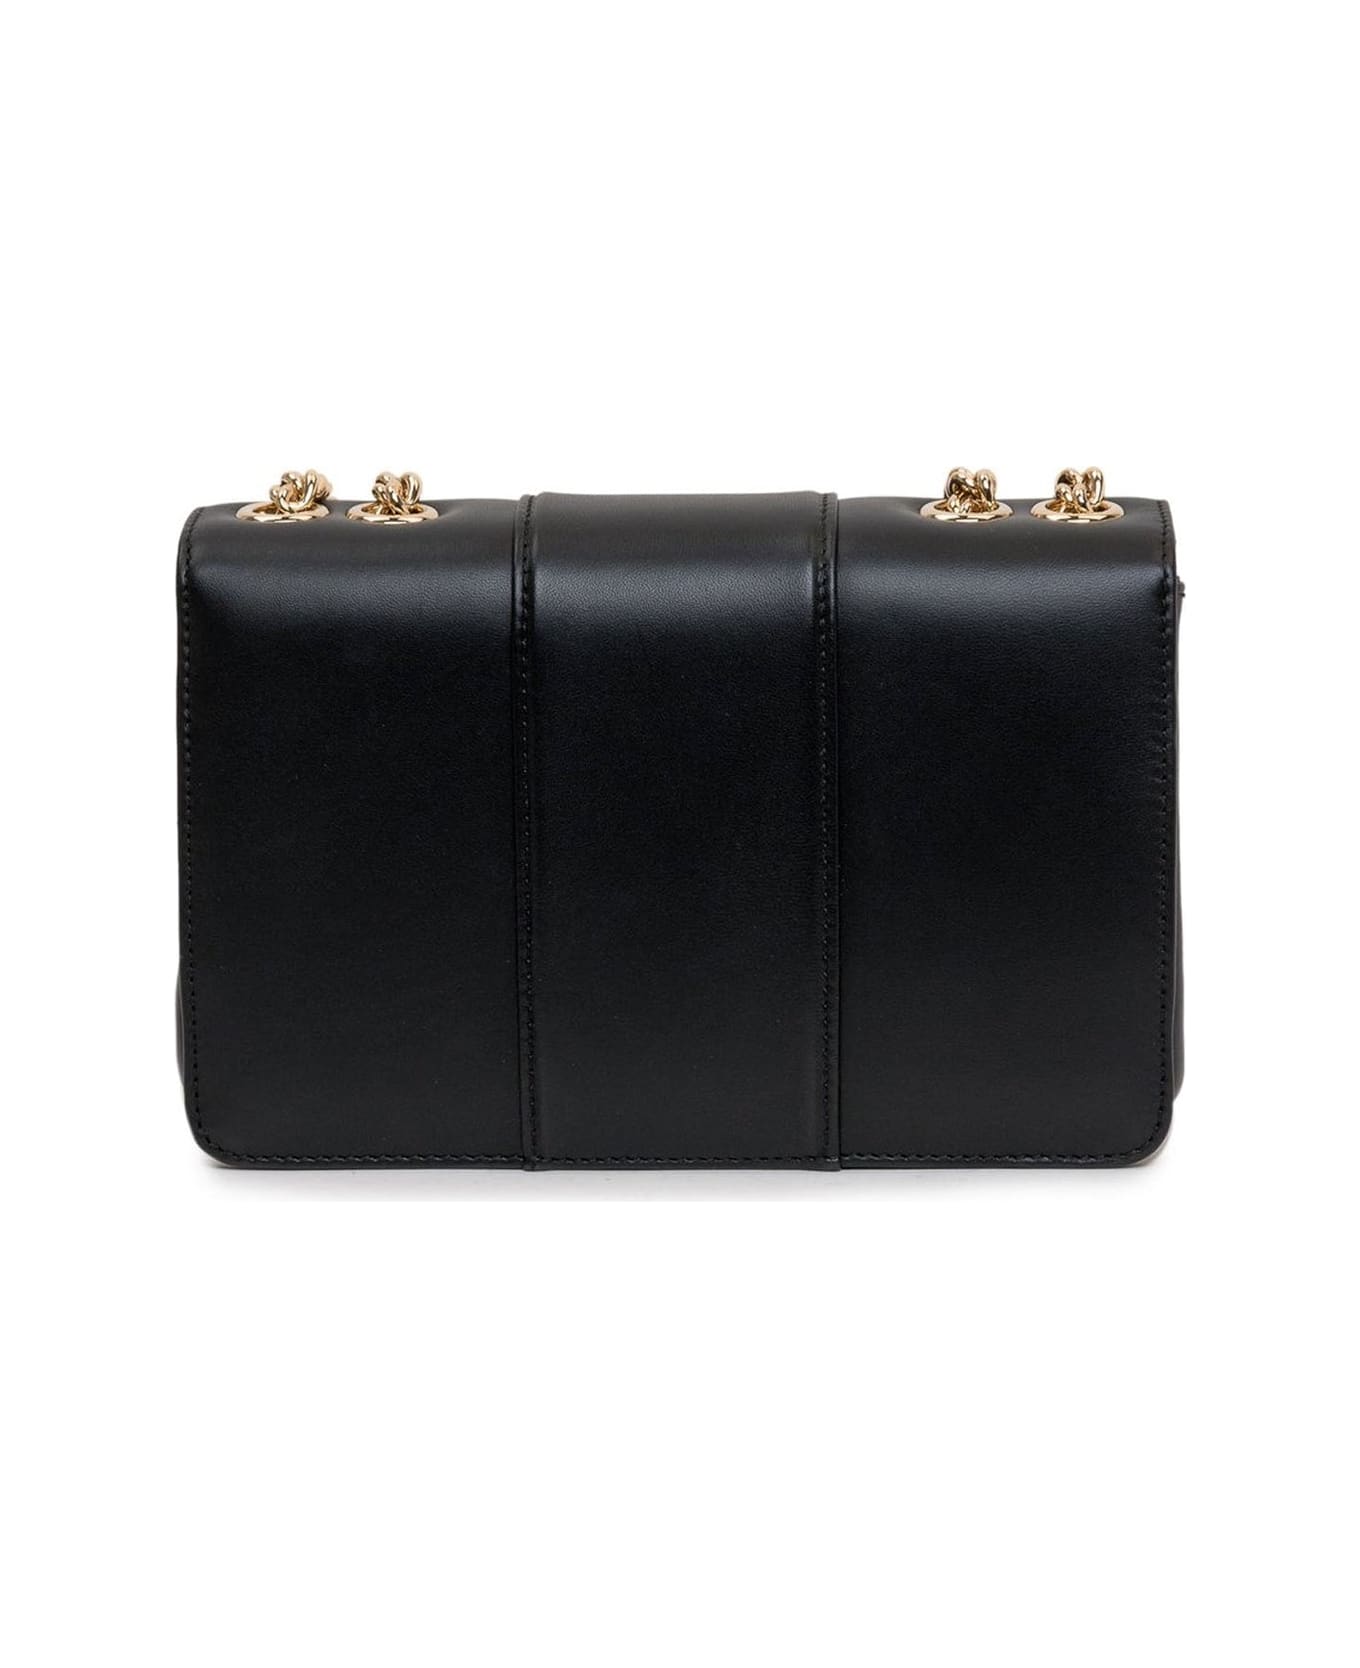 Dolce & Gabbana Leather Shoulder Bag - Black ショルダーバッグ